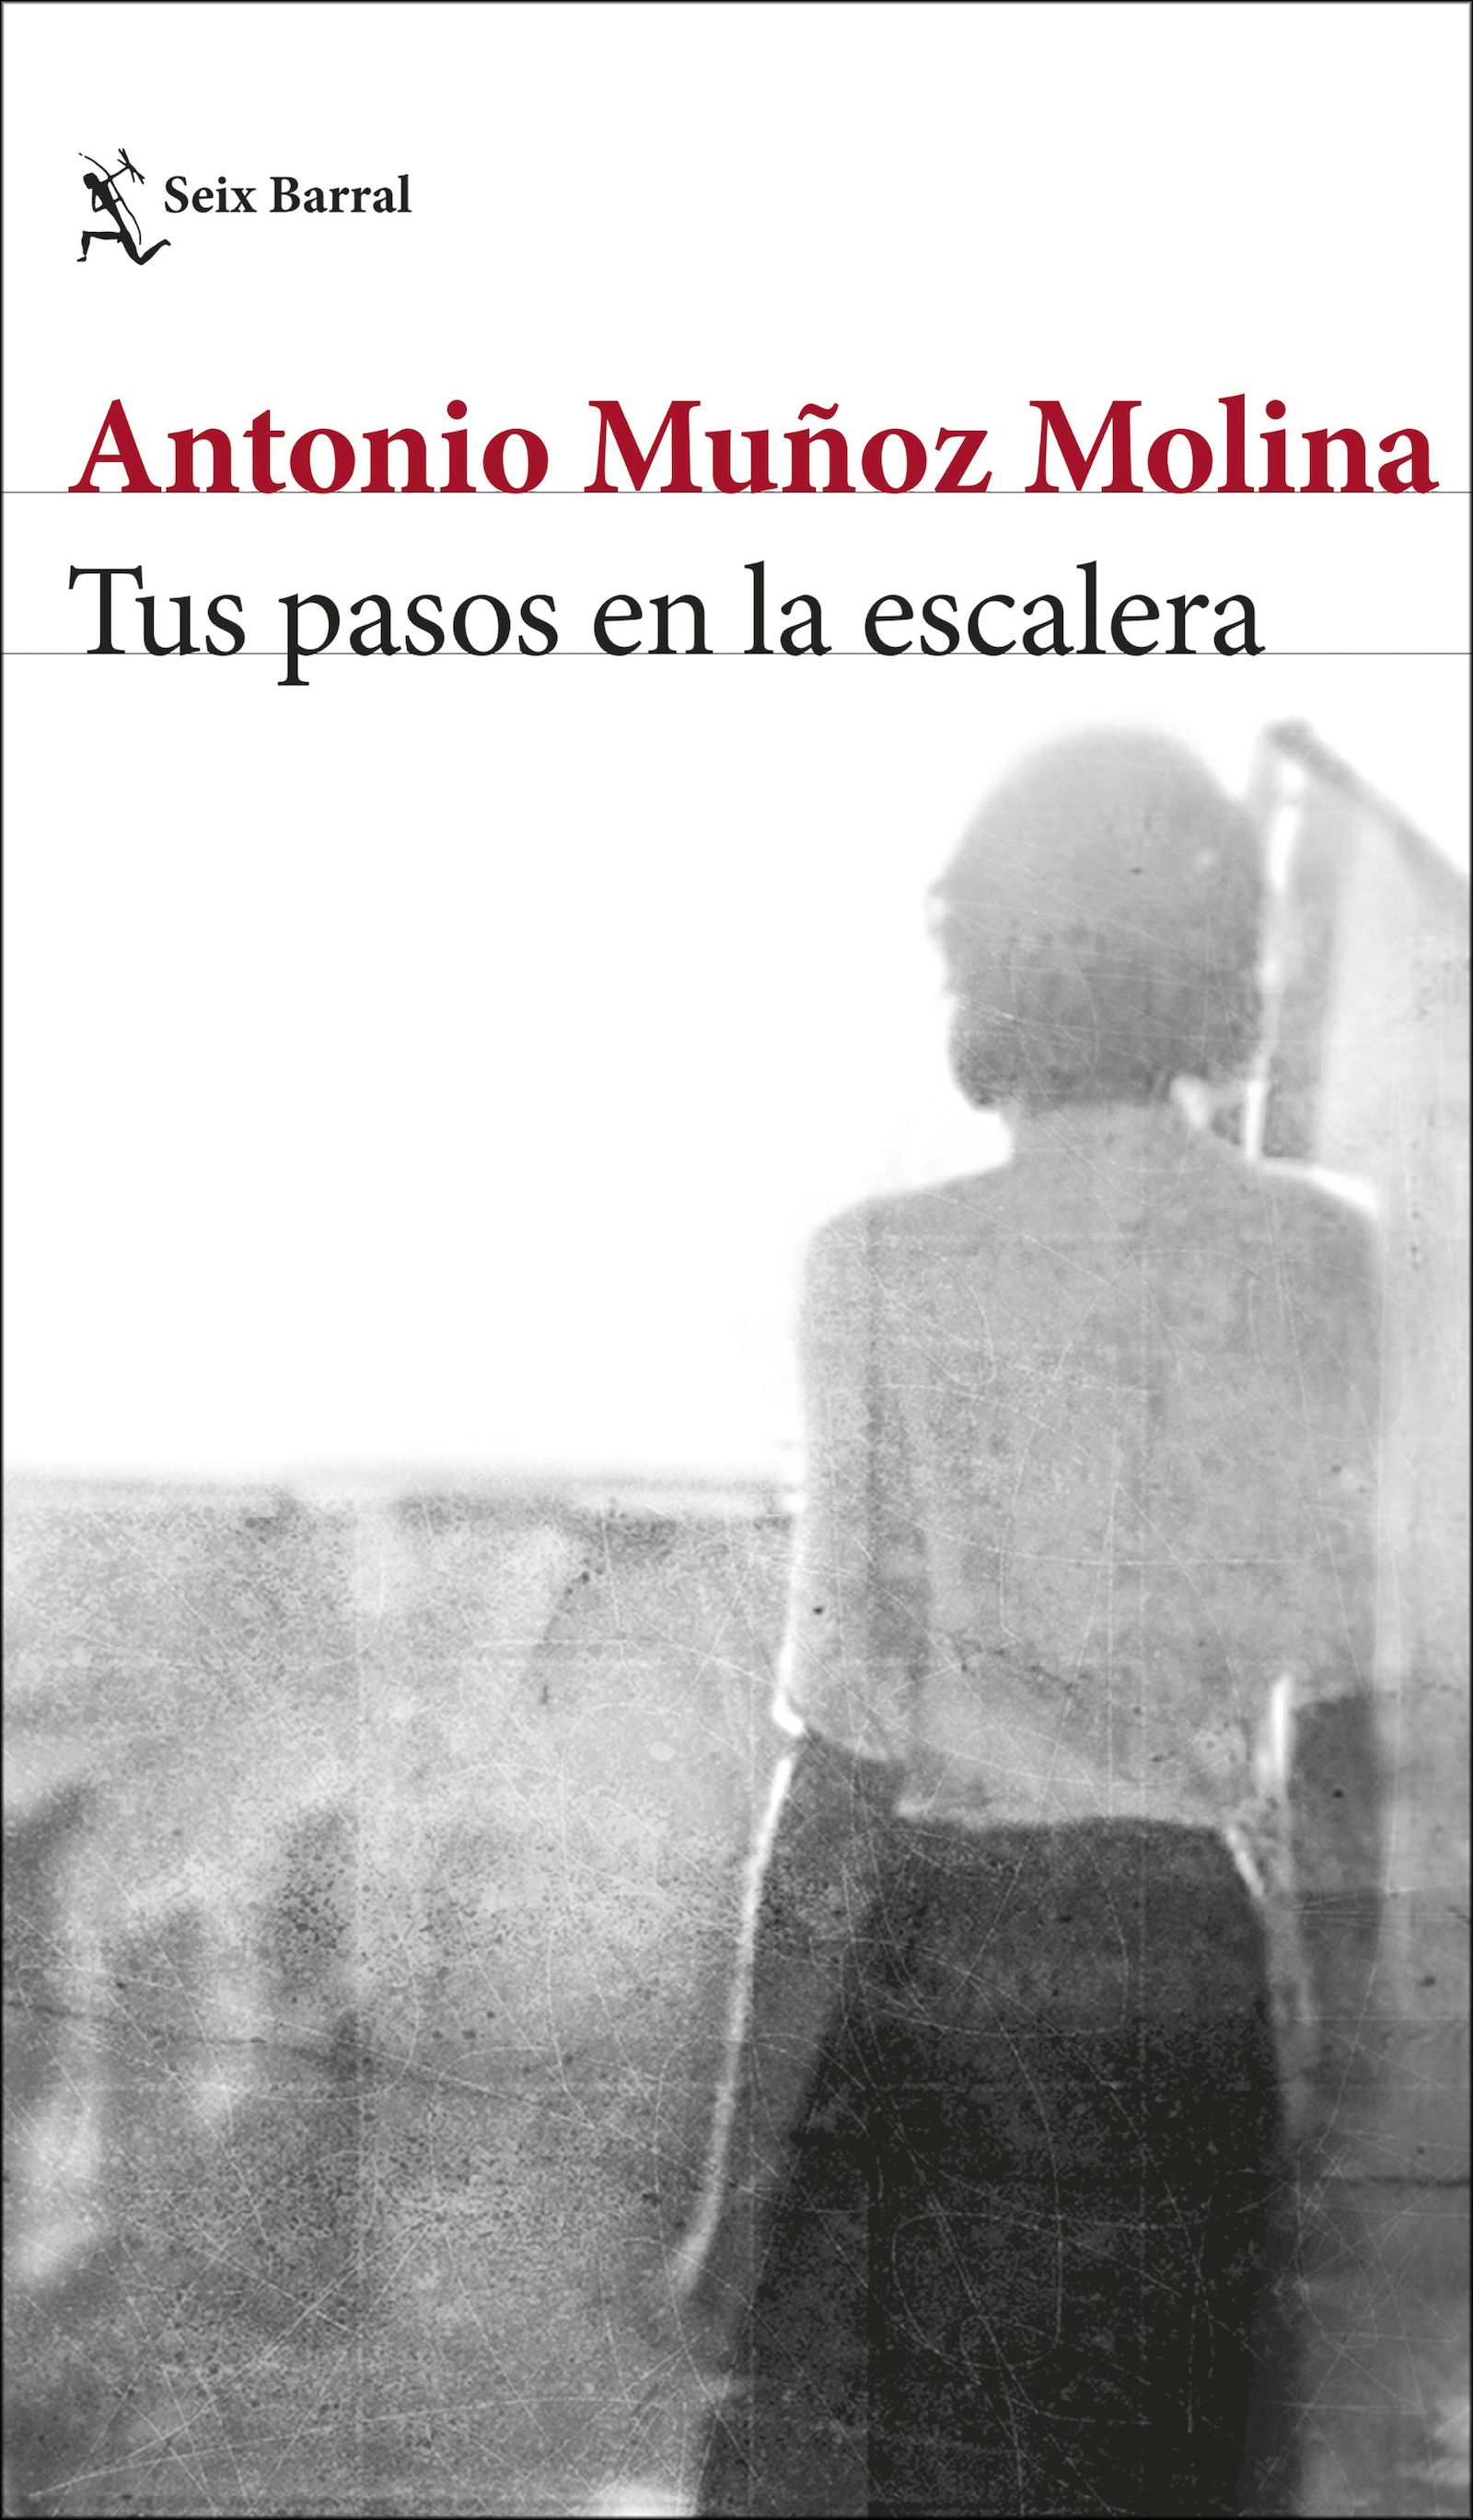 Cover des Buchs "Tus pasos en la escalera" von Antonio Muñoz Molina